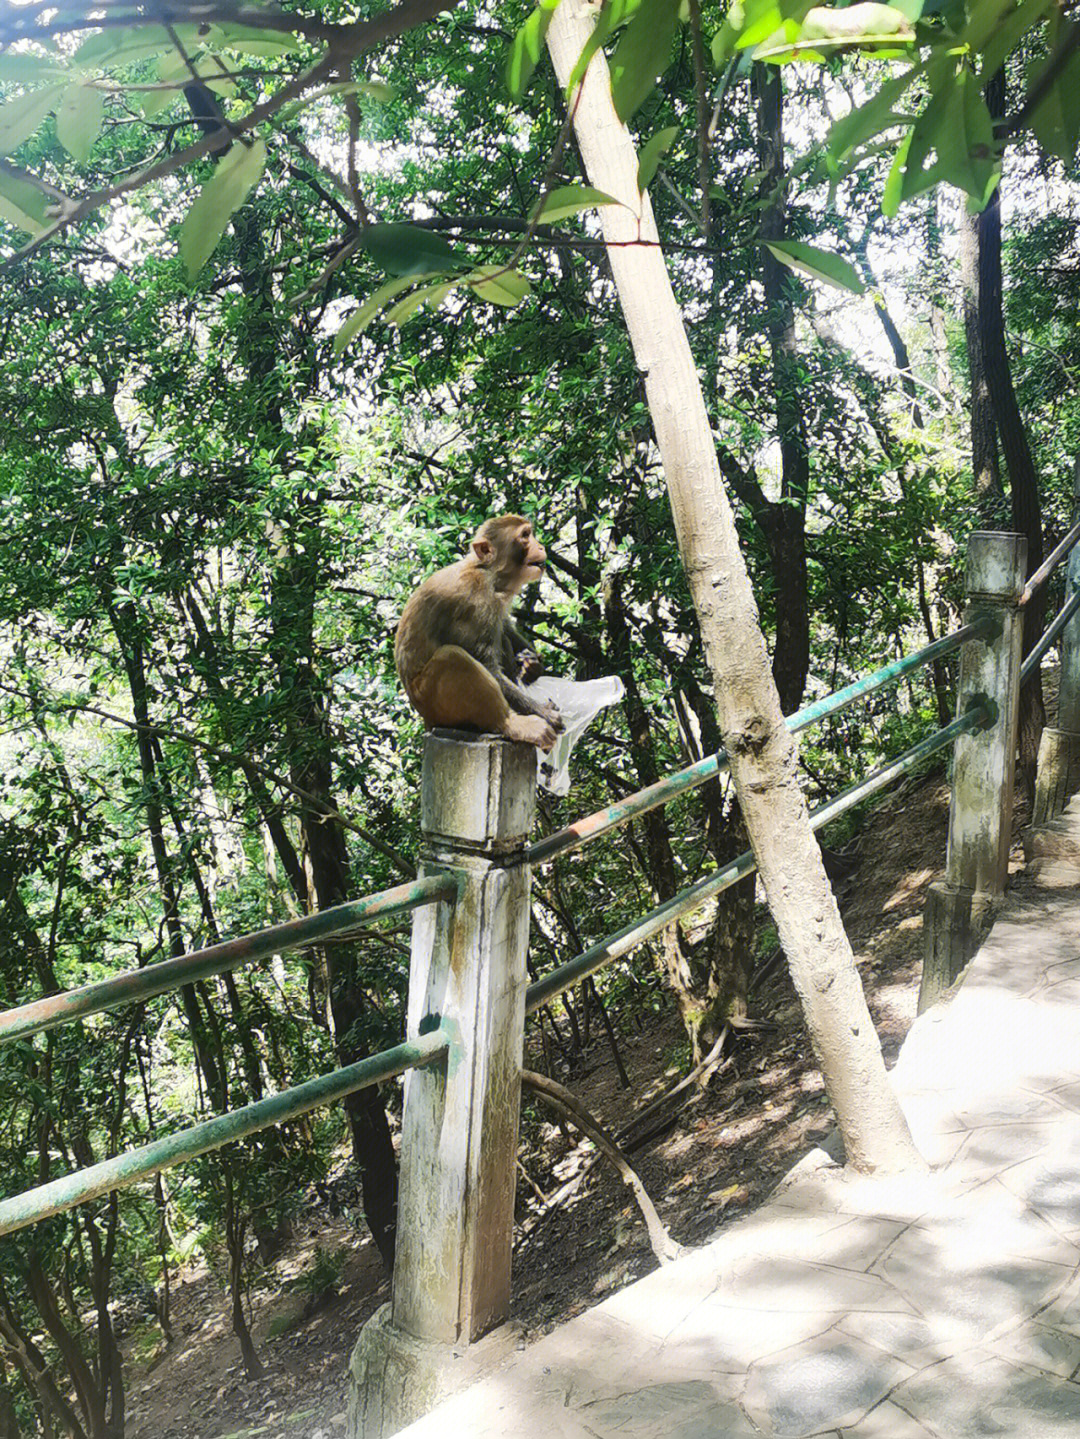 黔灵山公园,5元门票,单程15元缆车,满山随处可见的猴子,动物园免费